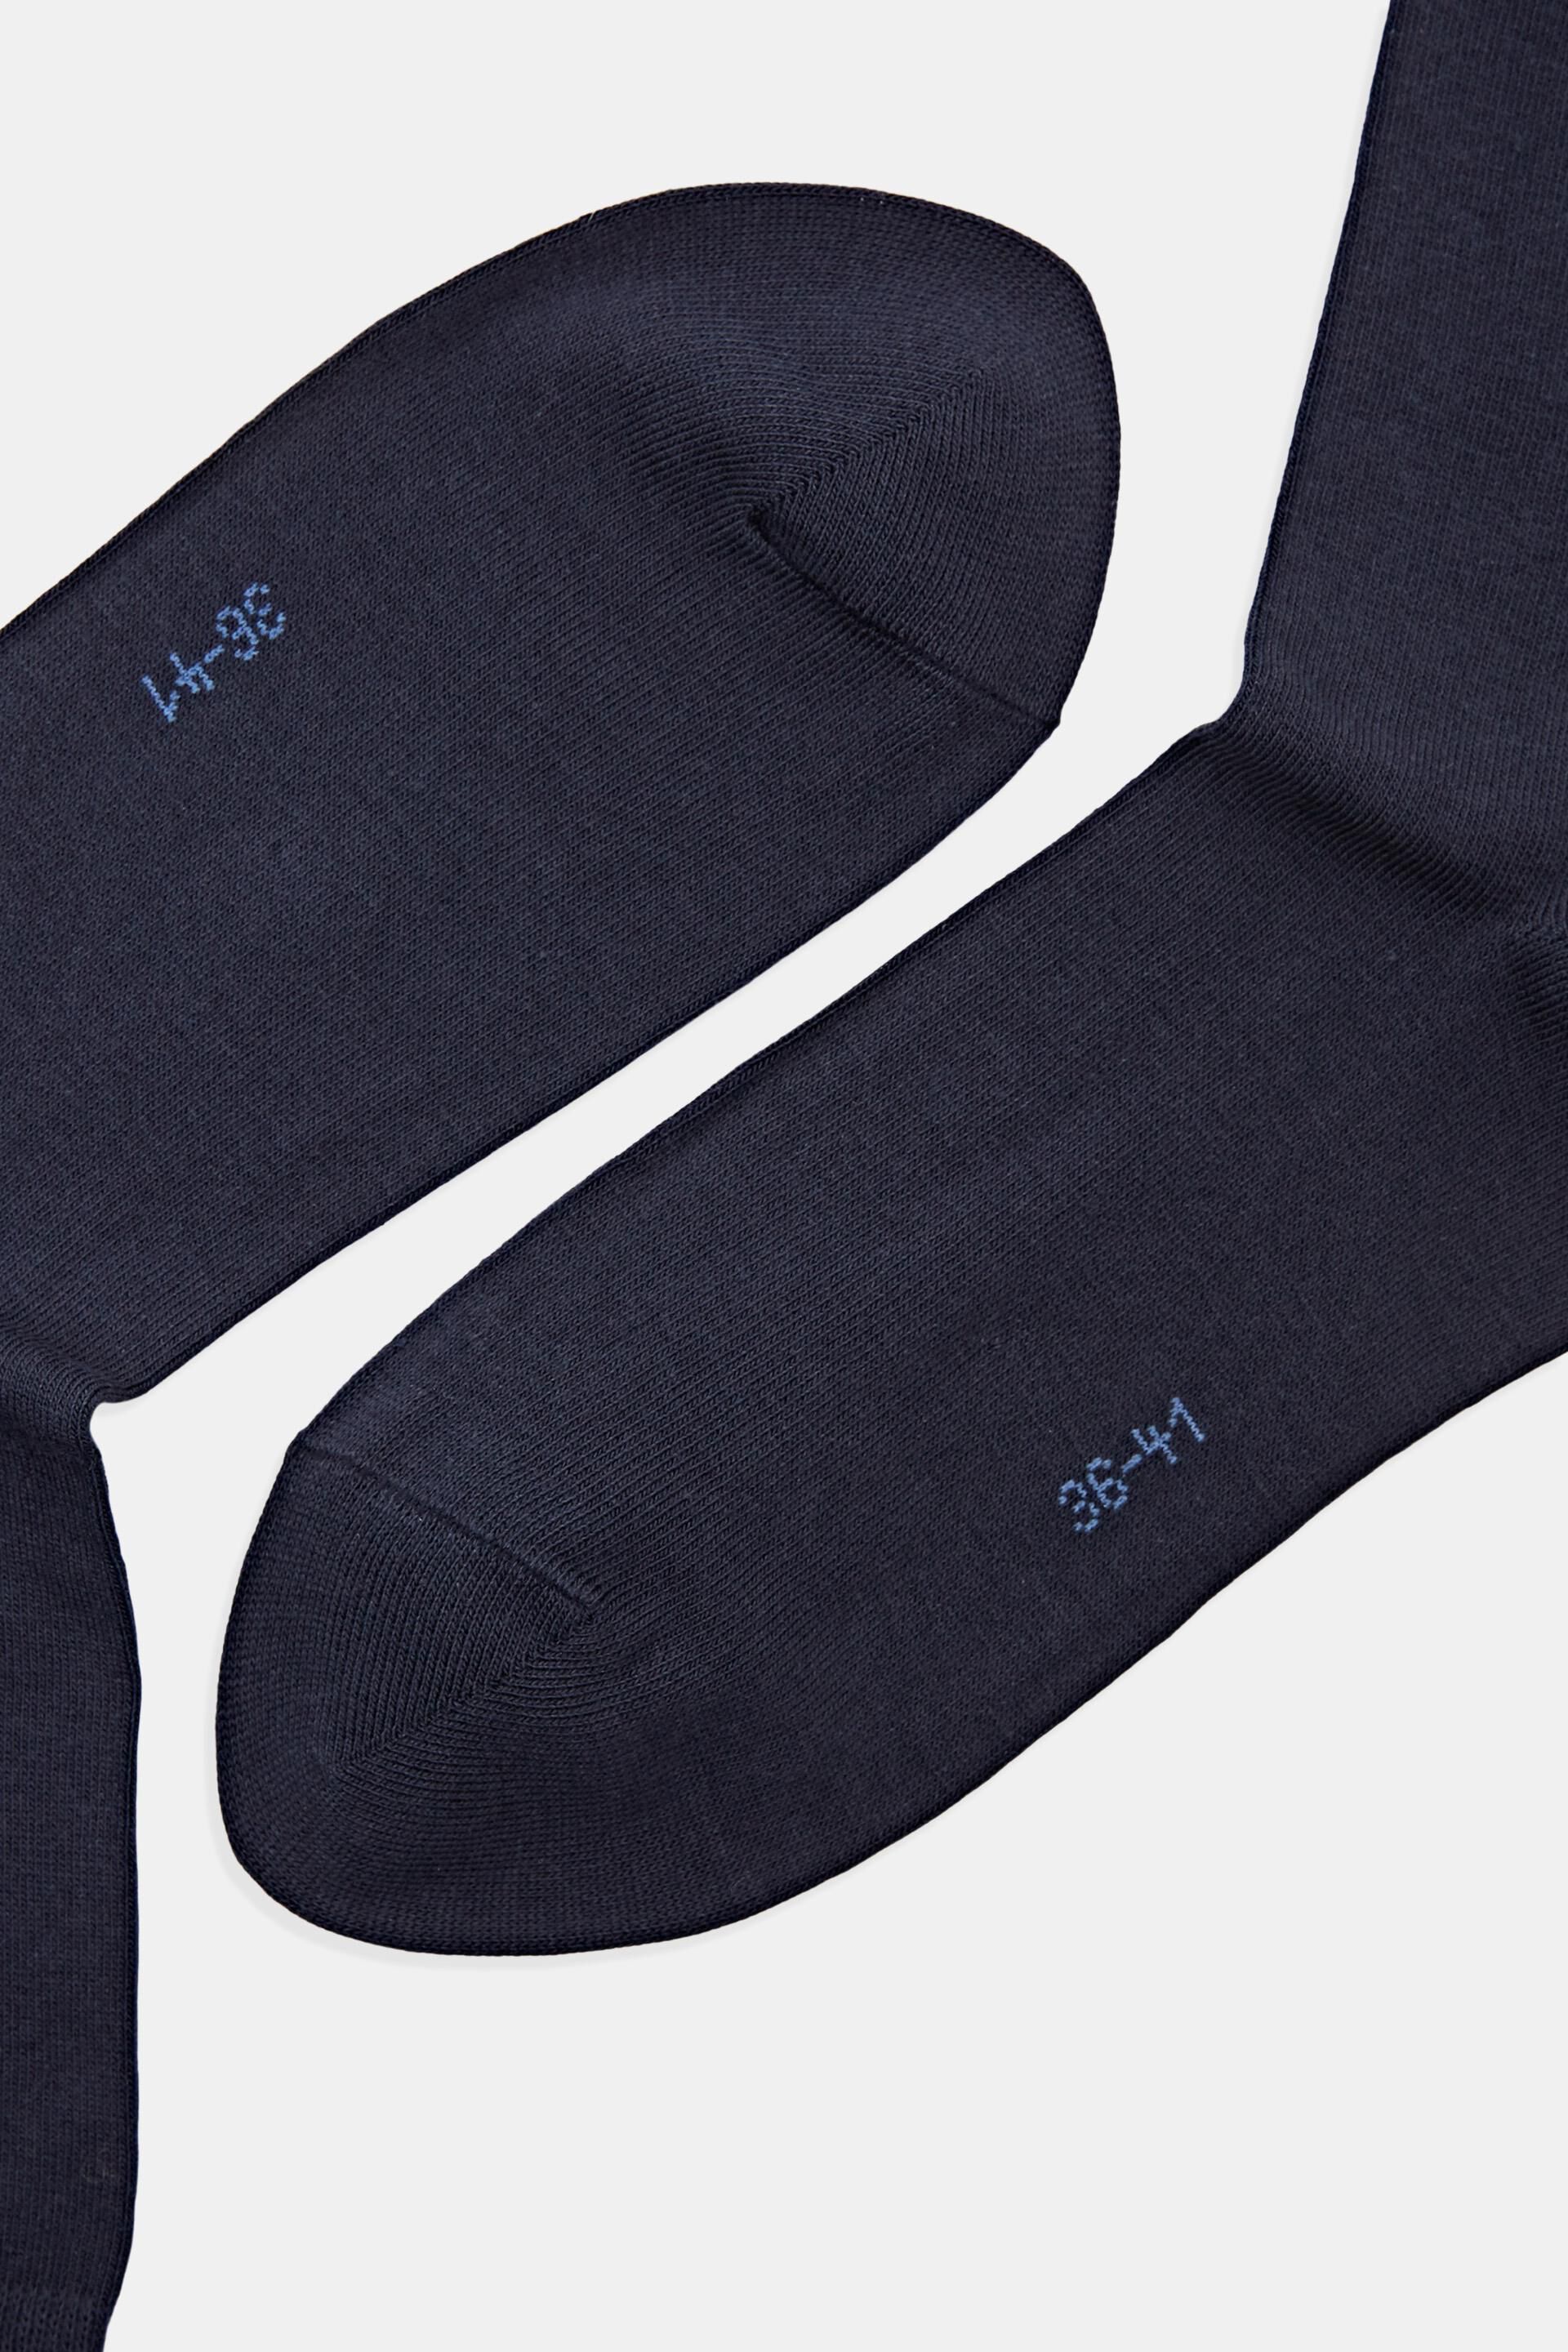 Esprit Online Store 5er-Pack einfarbige aus Socken Bio-Baumwolle